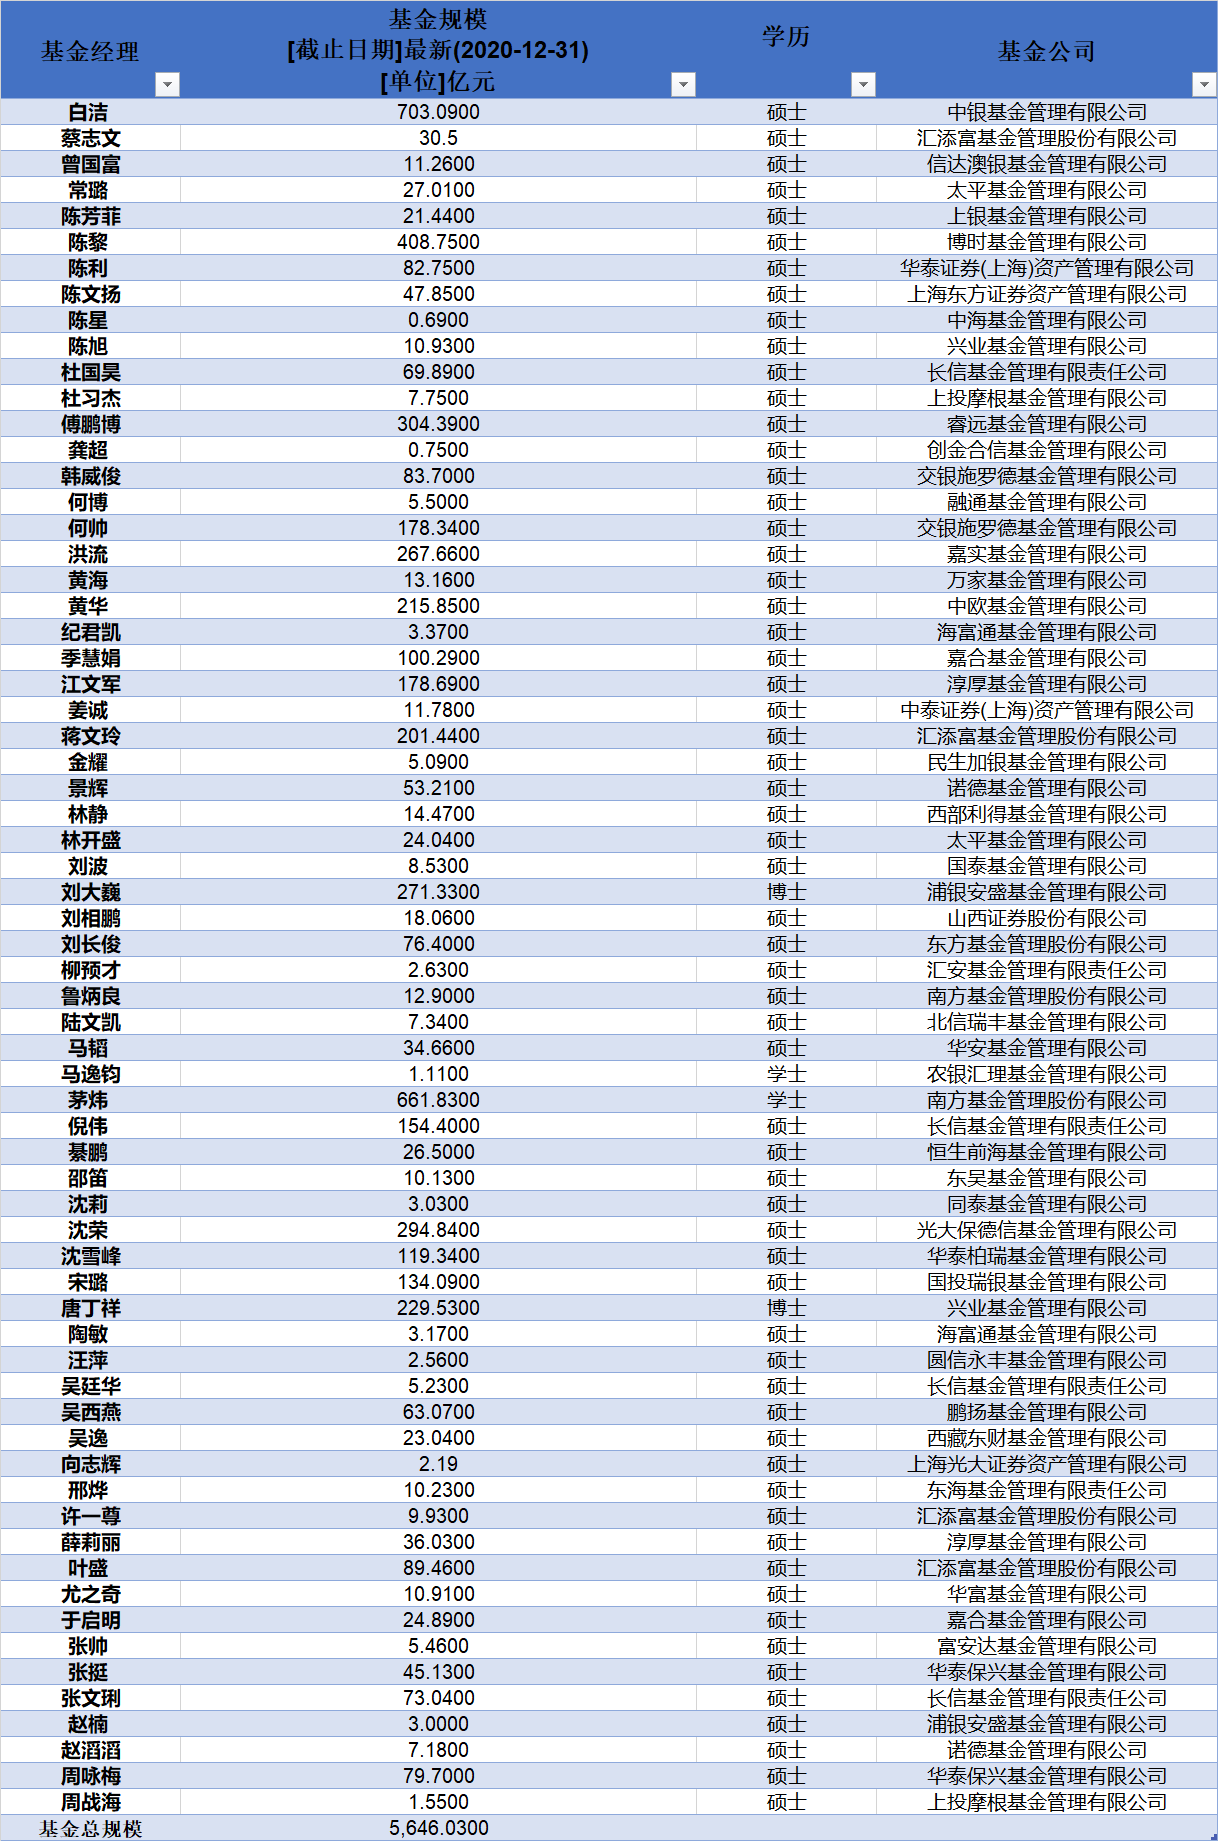 上海财经大学基金经理人数及持有基金规模统计 